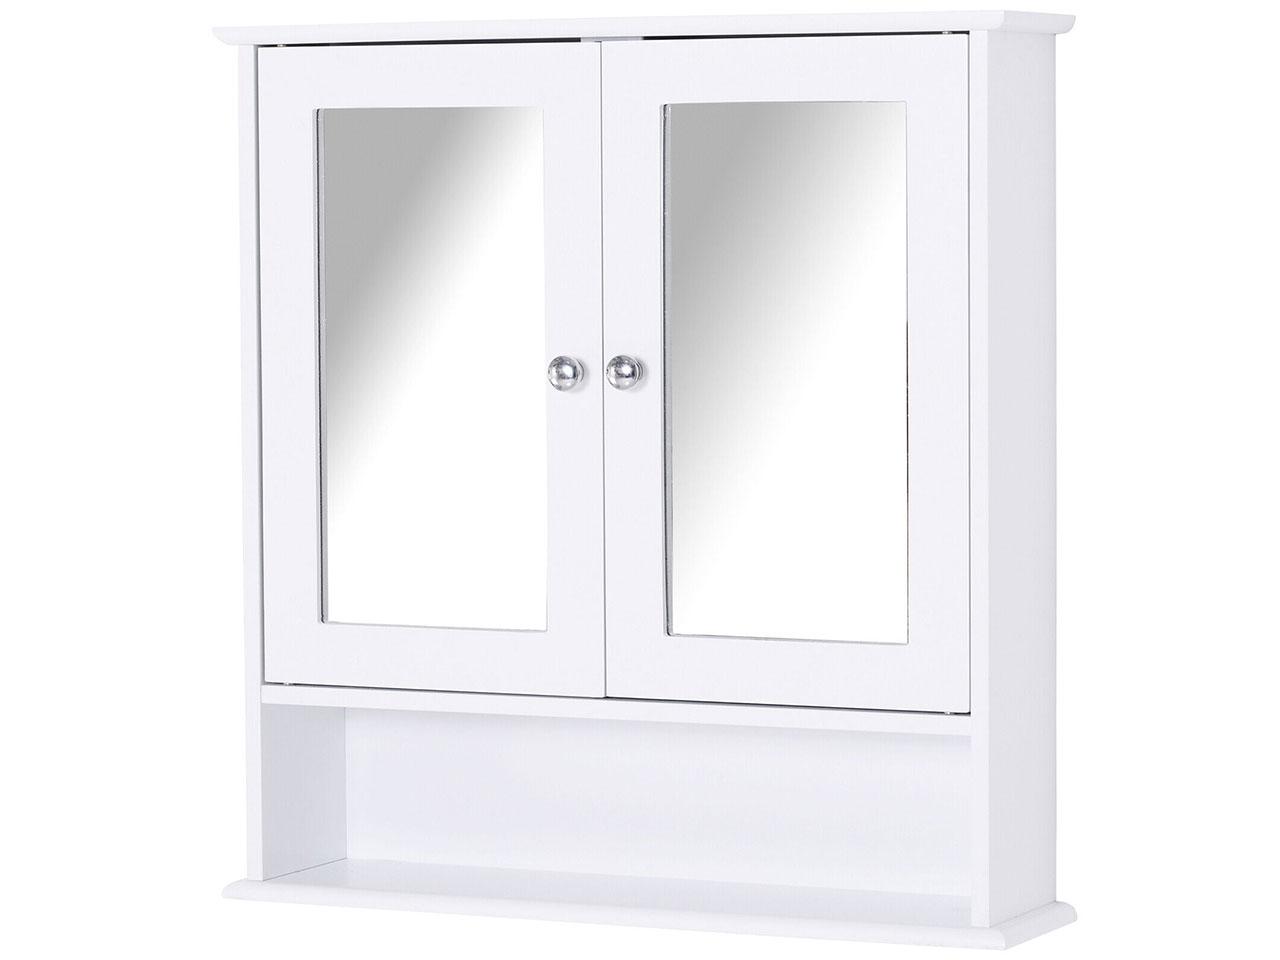 Koupelnová zrcadlová skříňka 834-182V01, nástěnná skříňka, se 3 policemi, kosmetická skříňka, MDF, bílá